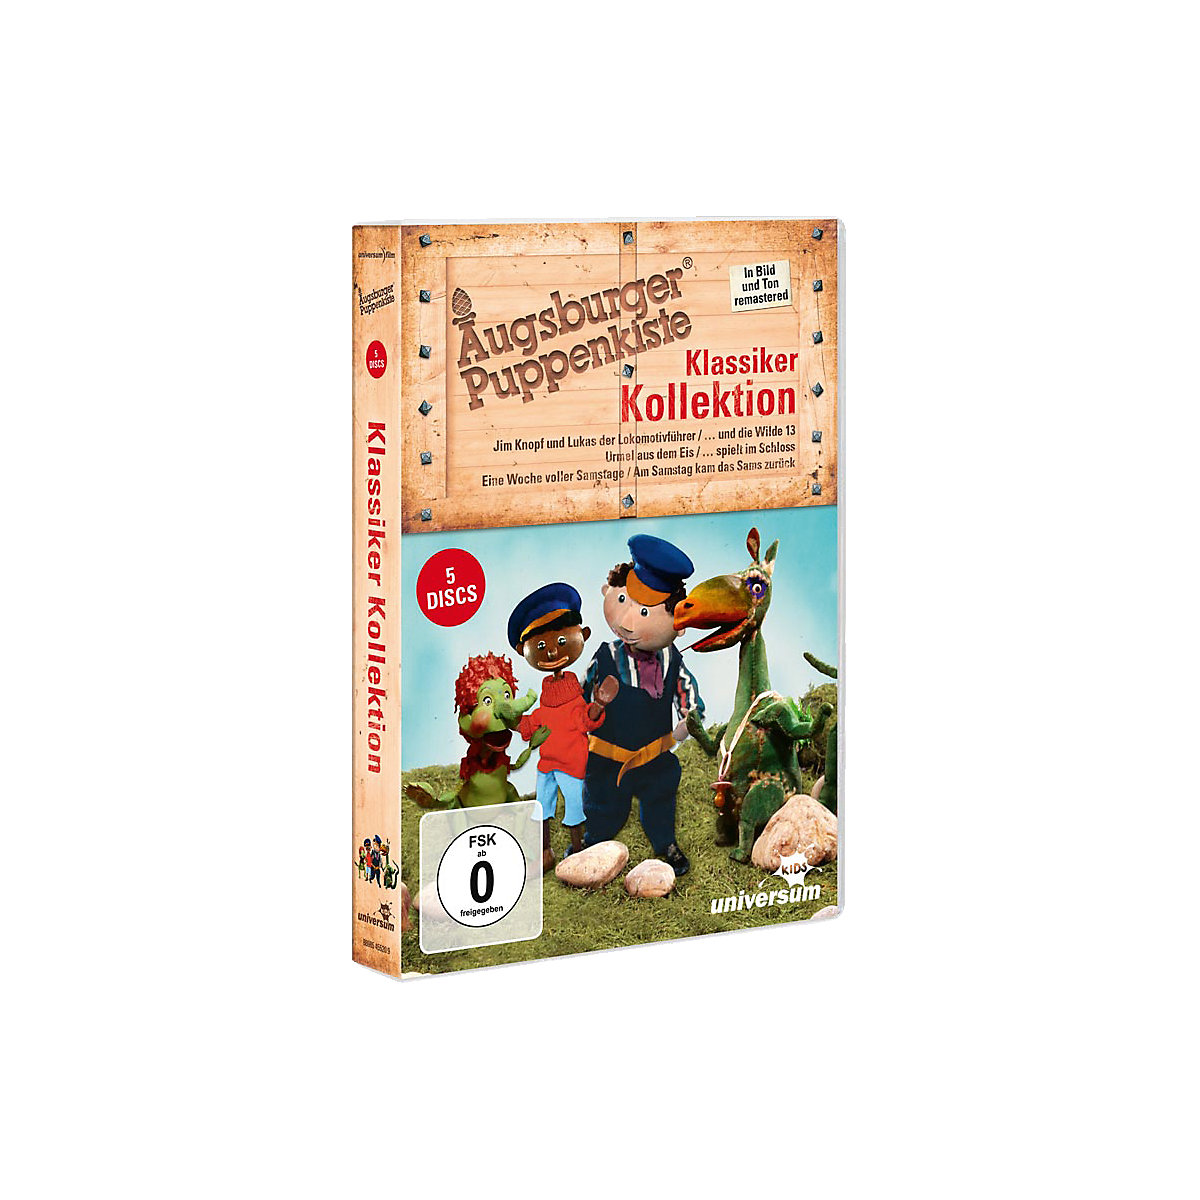 universum DVD Augsburger Puppenkiste Klassiker Kollektion (5 DVDs) TN9843